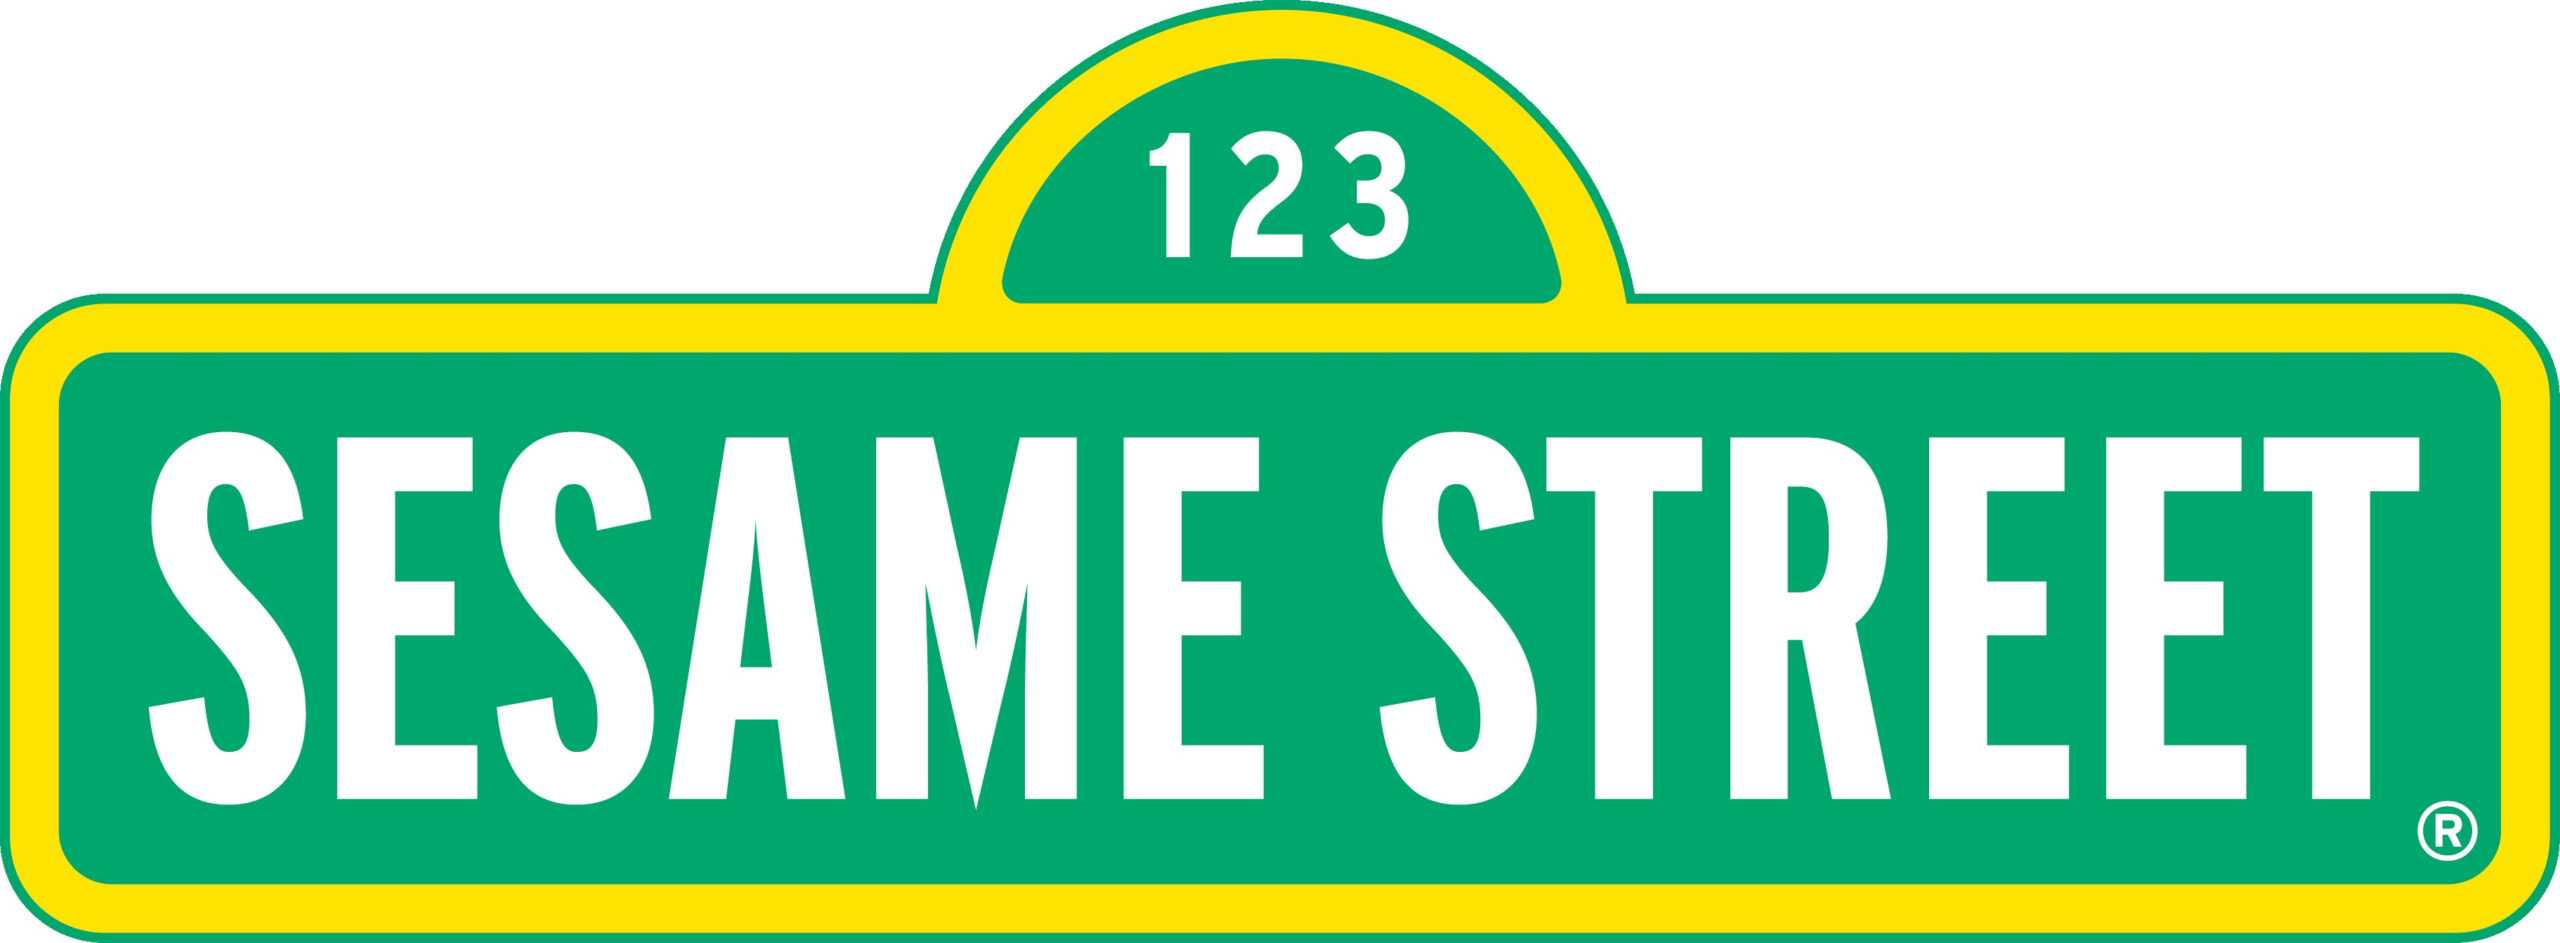 Sesame Street Sign Clipart Intended For Sesame Street Banner Template